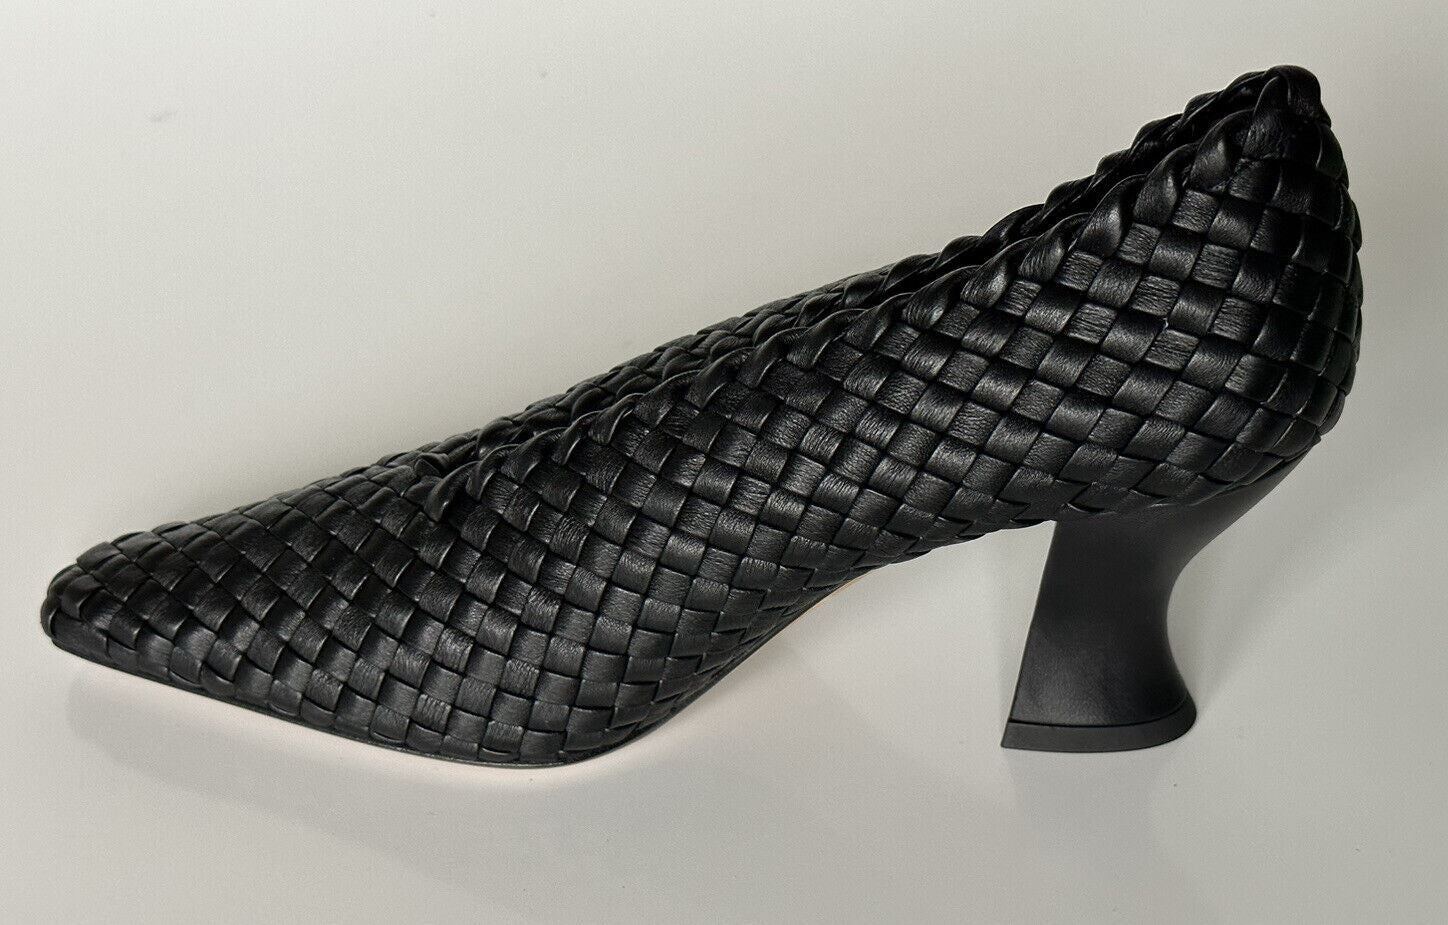 Черные кожаные туфли Bottega Veneta Tubular Lagoon Intrecciato 7,5 608850, $1150